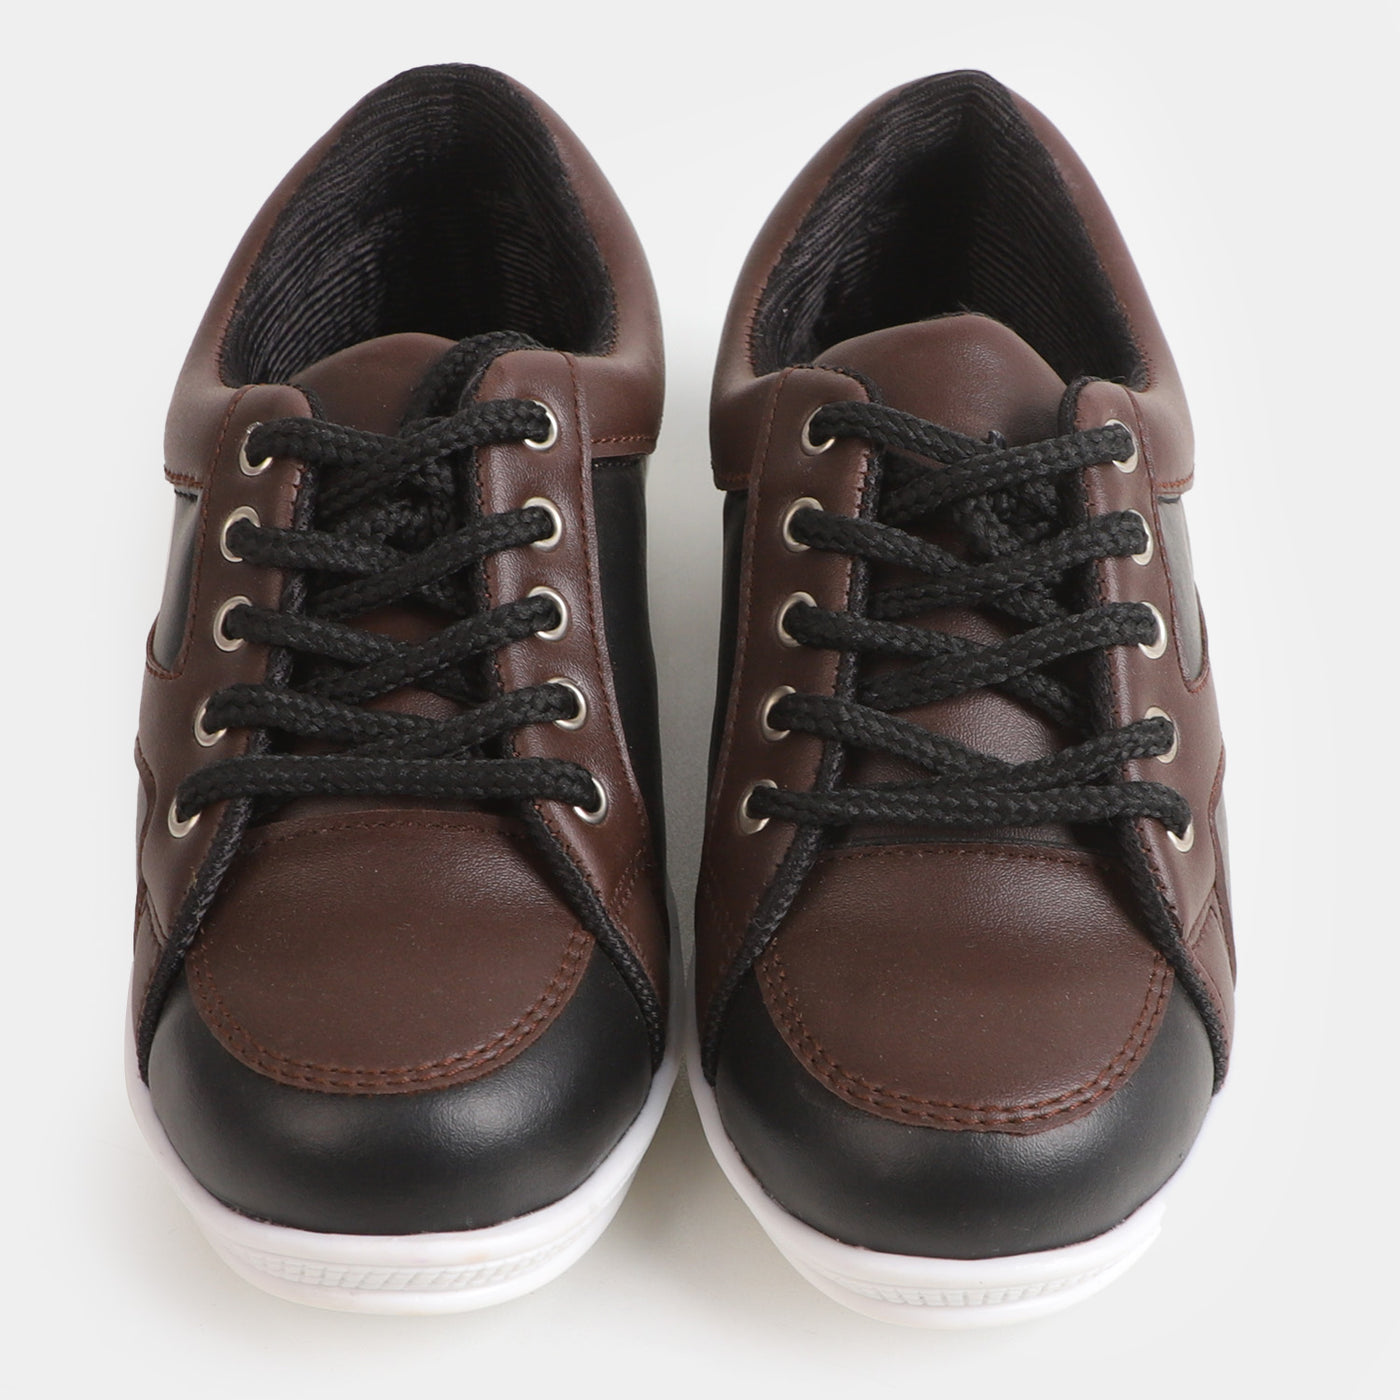 Boys Casual Sneakers 203-5 - Black/Brown